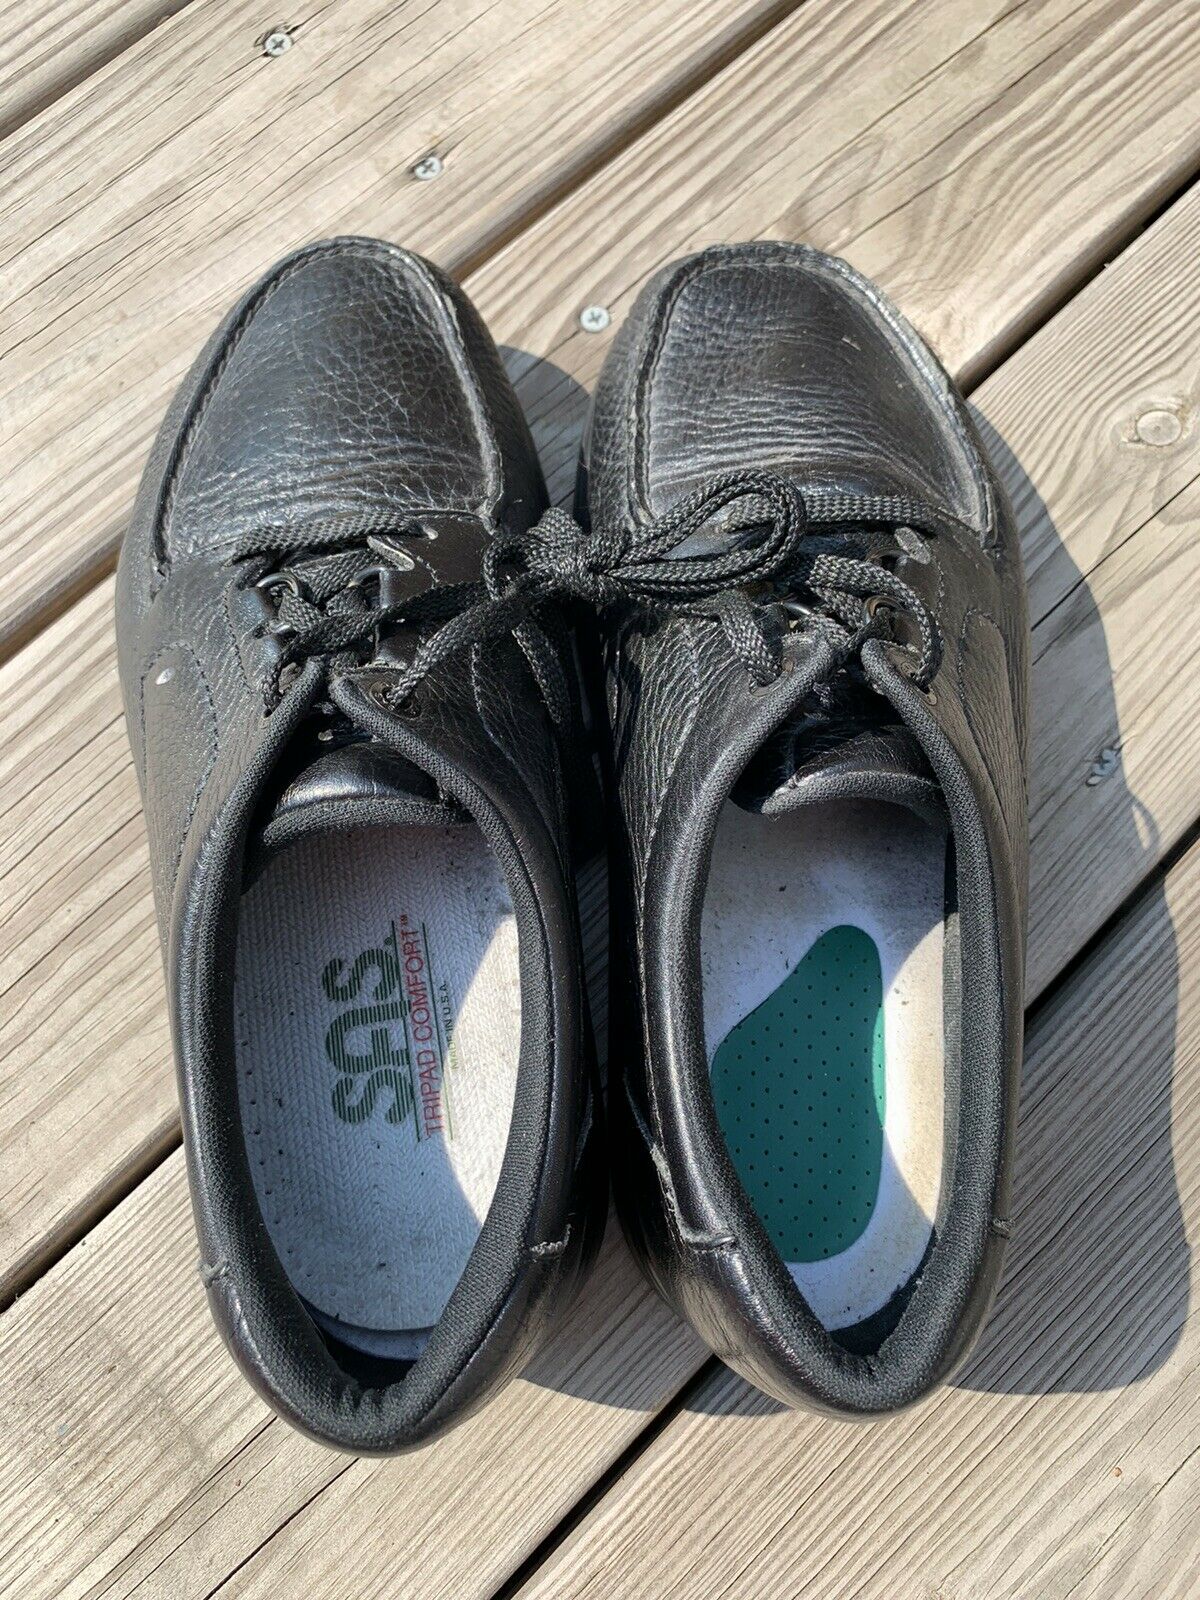 SAS Men's Shoes Lace Up Size 9.5 Wide Width Black Diabetic Walking Shoes Elderly